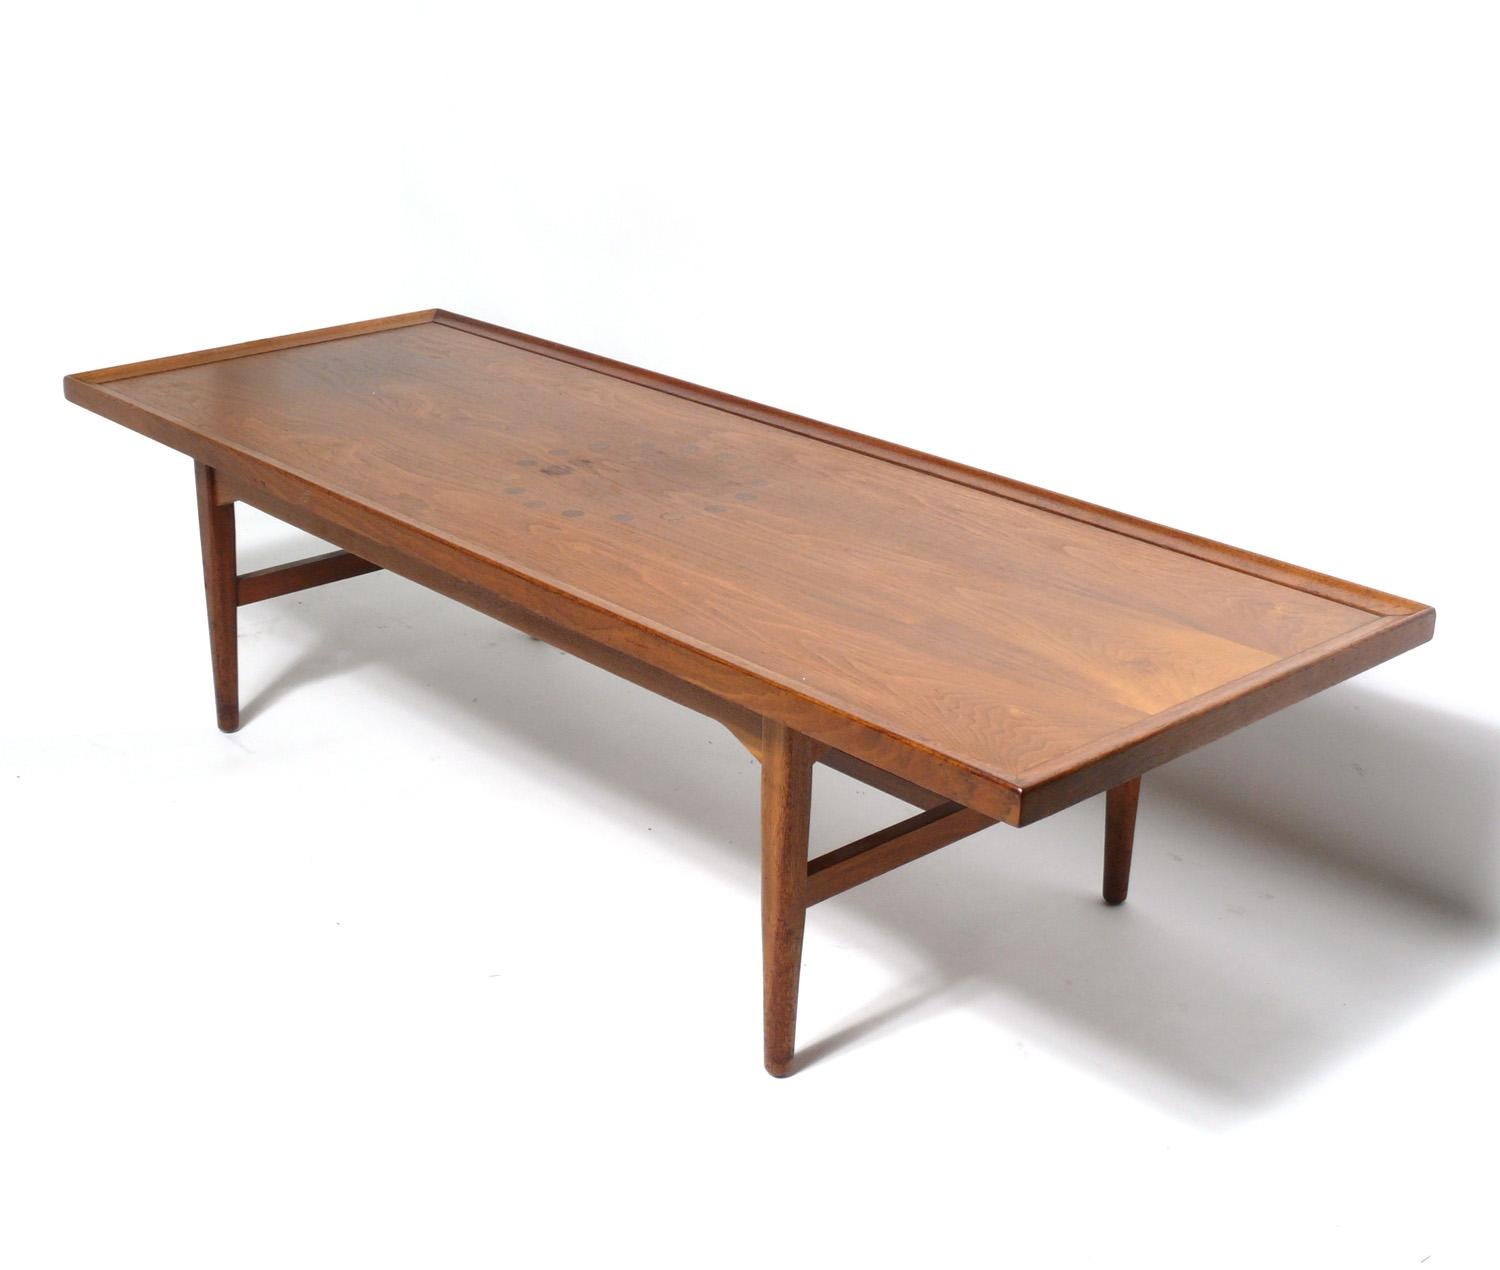 Table basse moderne du milieu du siècle, conçue par Kipp Stewart pour Drexel Declaration, américain, vers les années 1950.